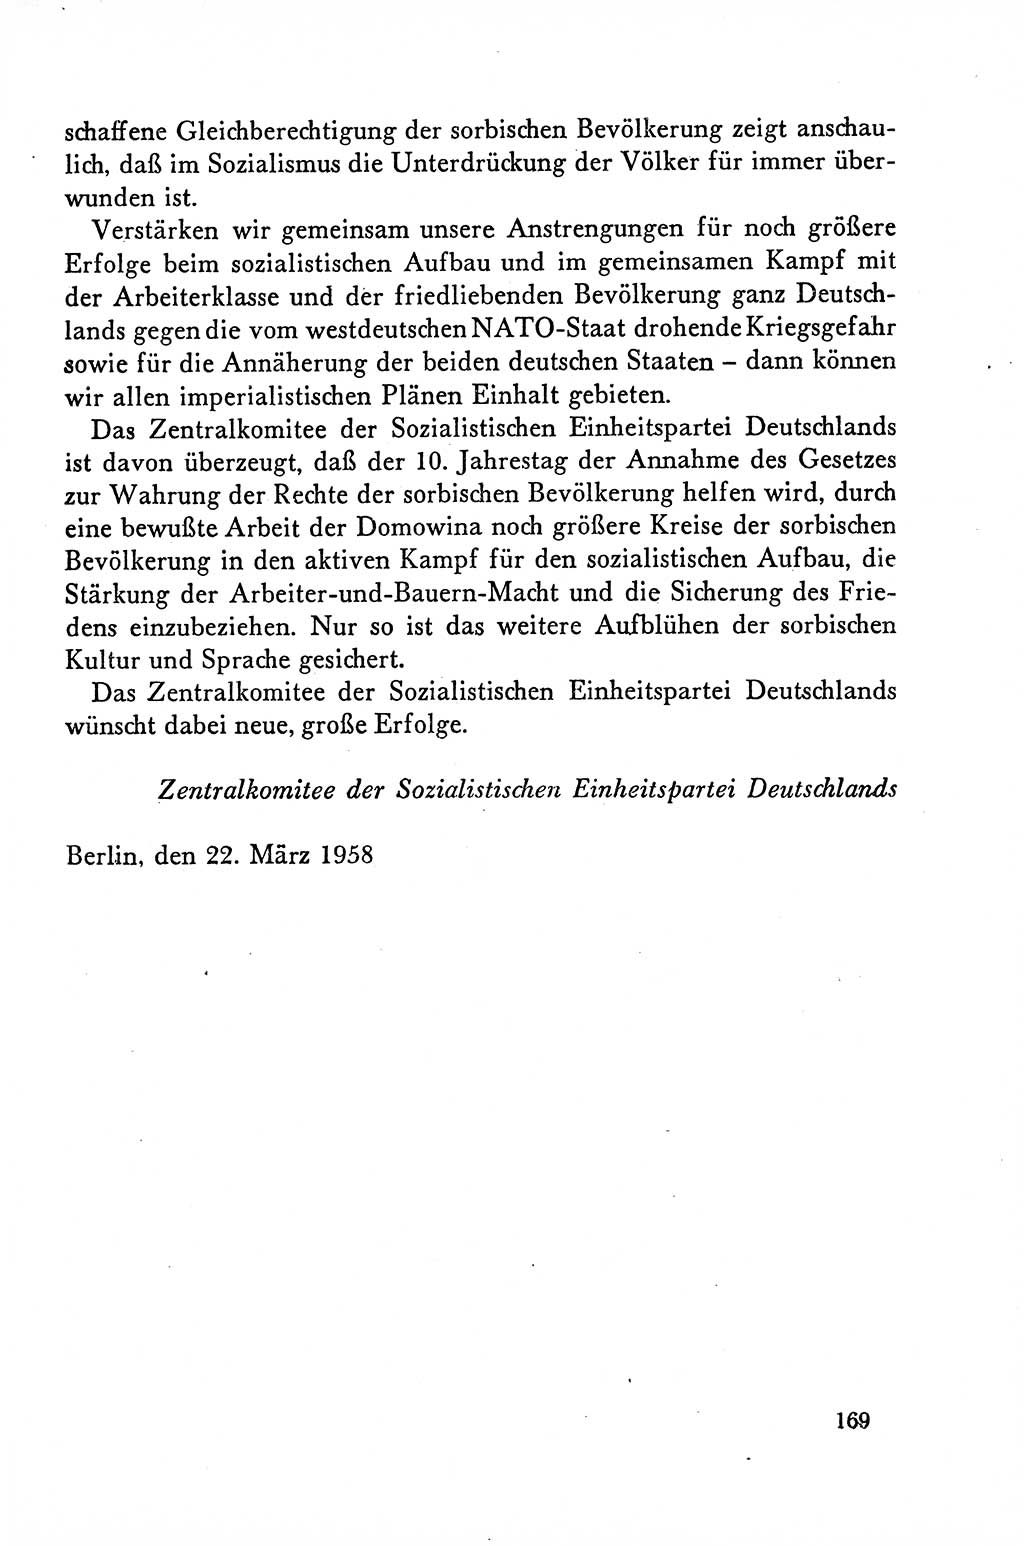 Dokumente der Sozialistischen Einheitspartei Deutschlands (SED) [Deutsche Demokratische Republik (DDR)] 1958-1959, Seite 169 (Dok. SED DDR 1958-1959, S. 169)